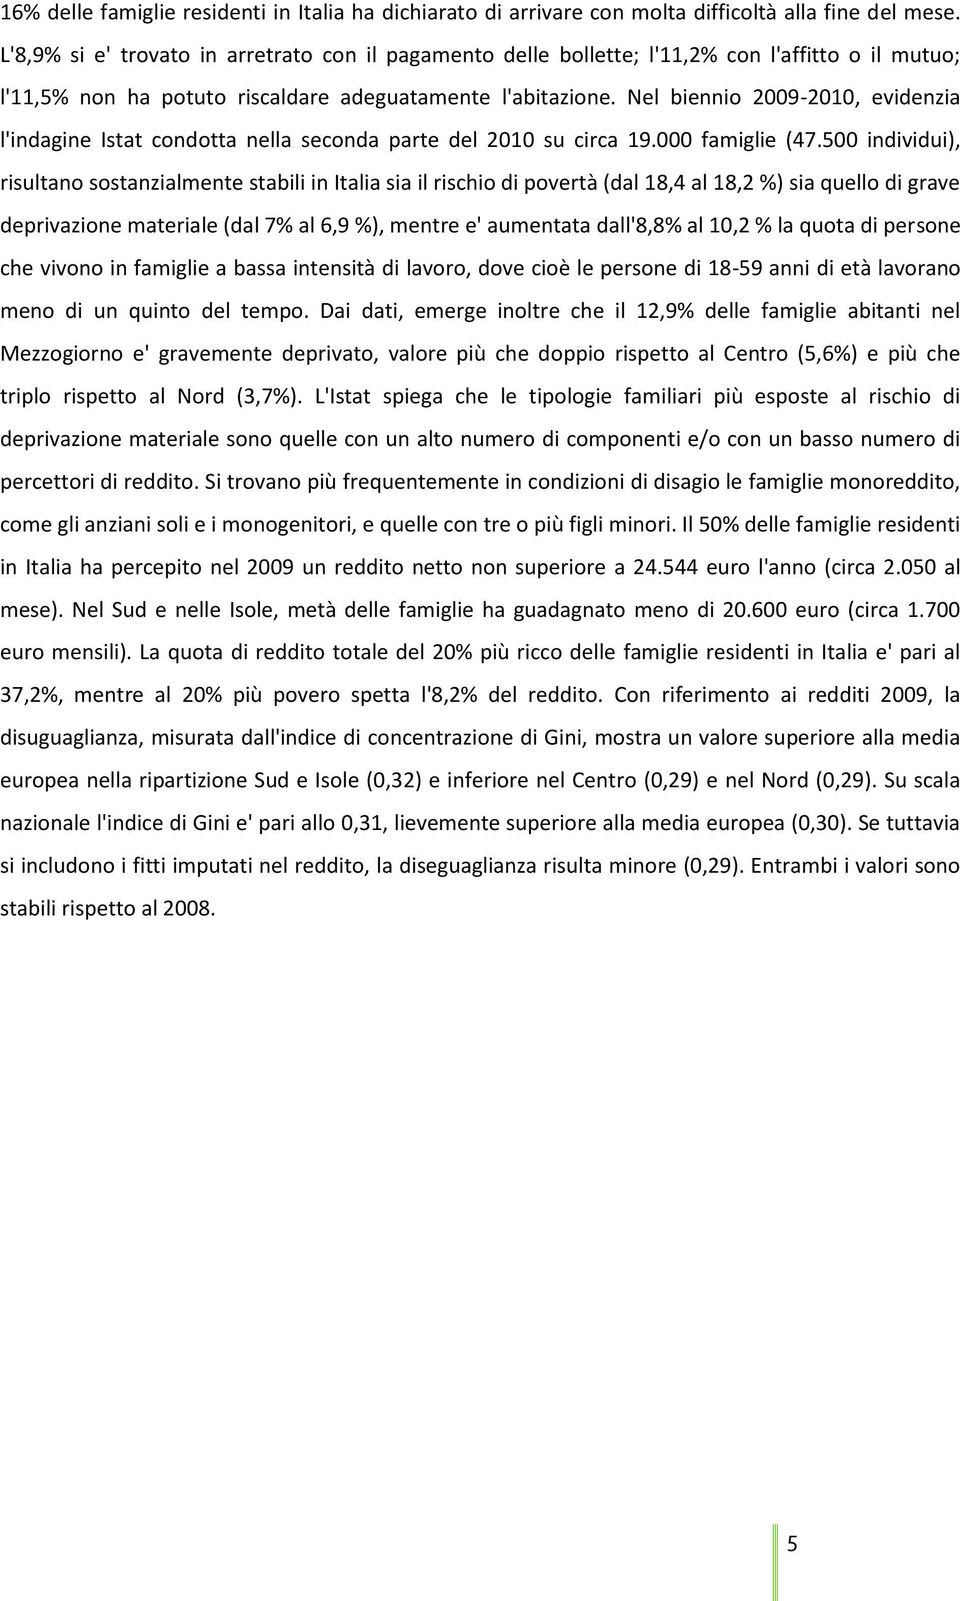 Nel biennio 2009-2010, evidenzia l'indagine Istat condotta nella seconda parte del 2010 su circa 19.000 famiglie (47.